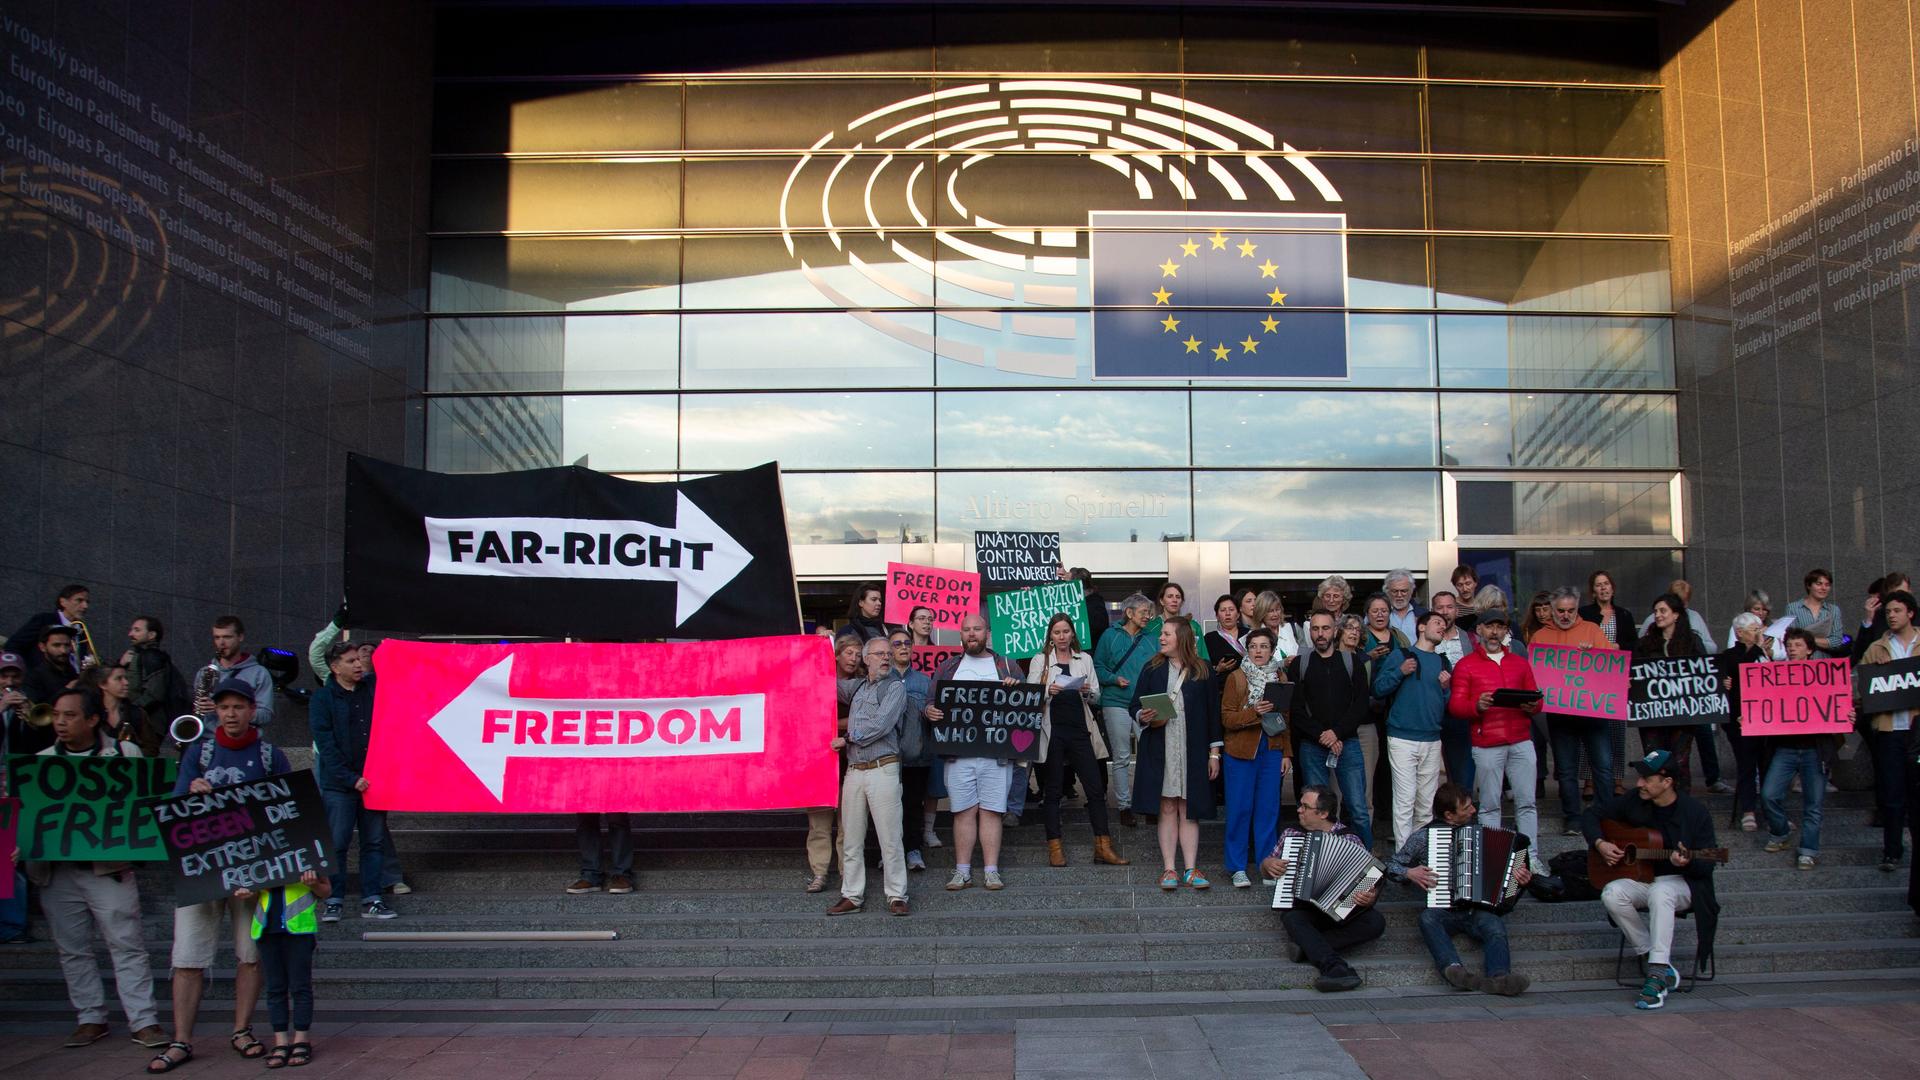 Protest gegen Rechts auf den Stufen des Europäischen Parlaments. Demonstranten halten große Pfeile, die in unterschiedliche Richtungen zeigen und mit "Far-Right" und "Freedom" beschriftet sind.